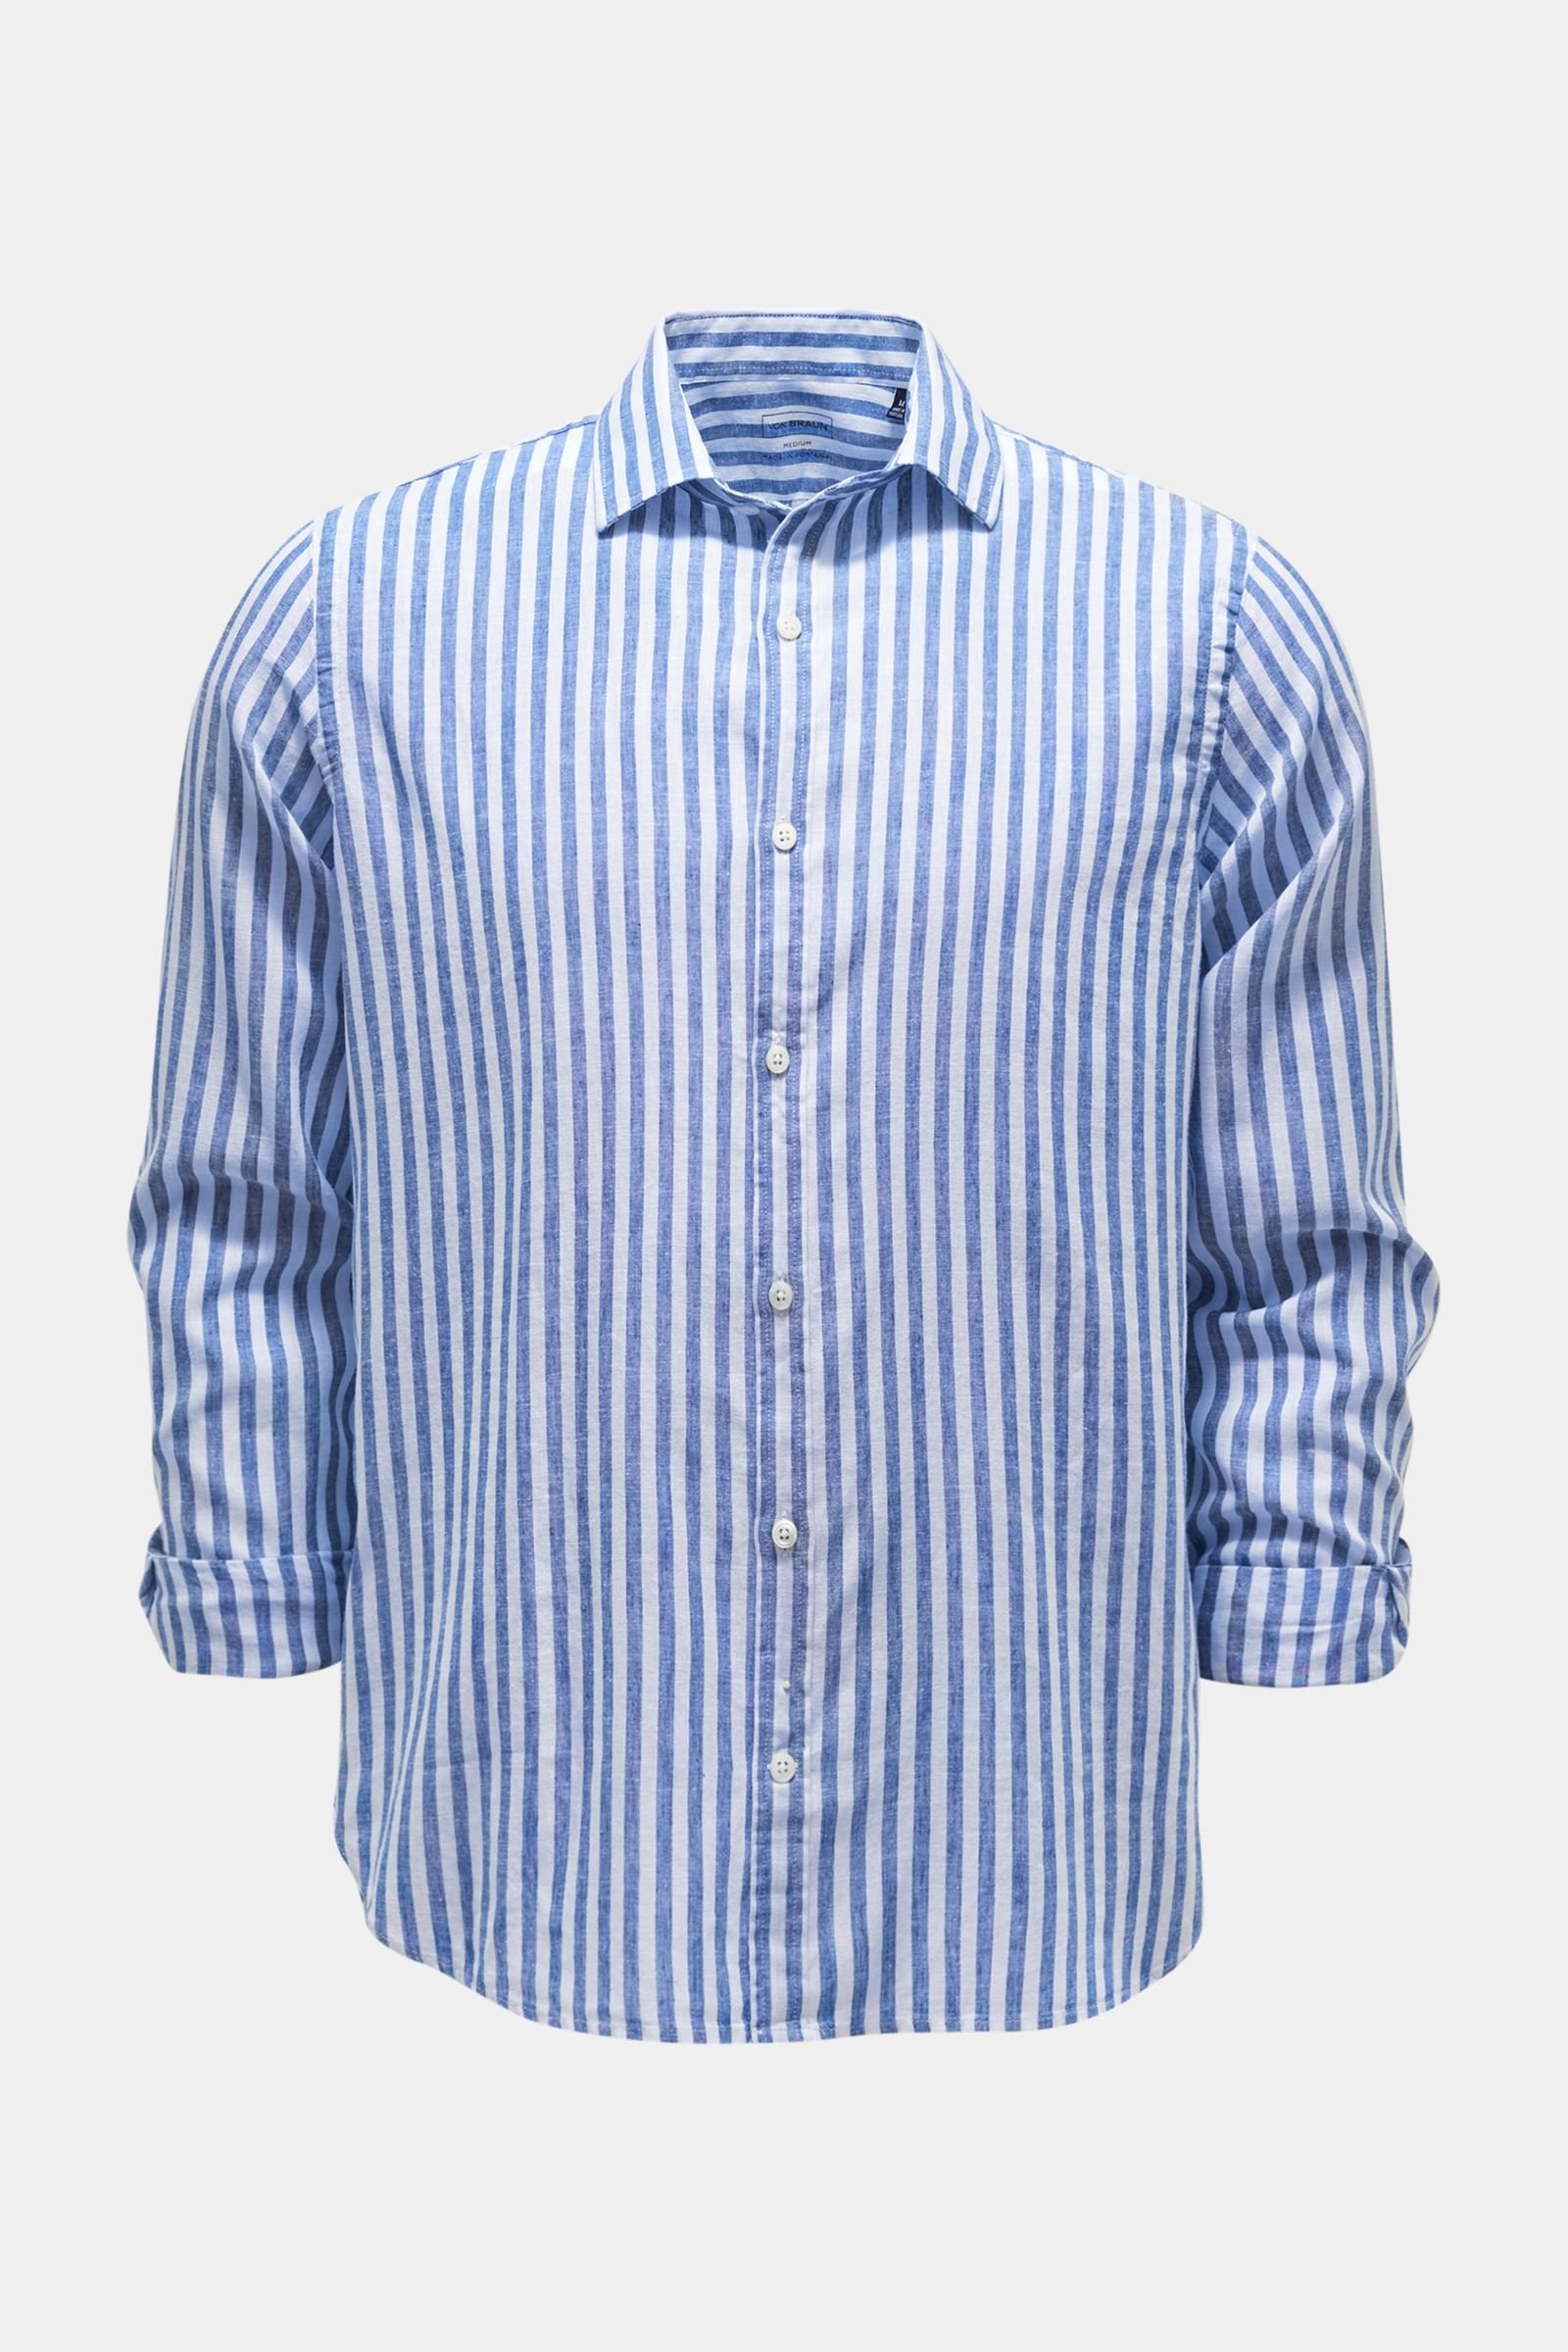 Casual Hemd schmaler Kragen dunkelblau/weiß gestreift